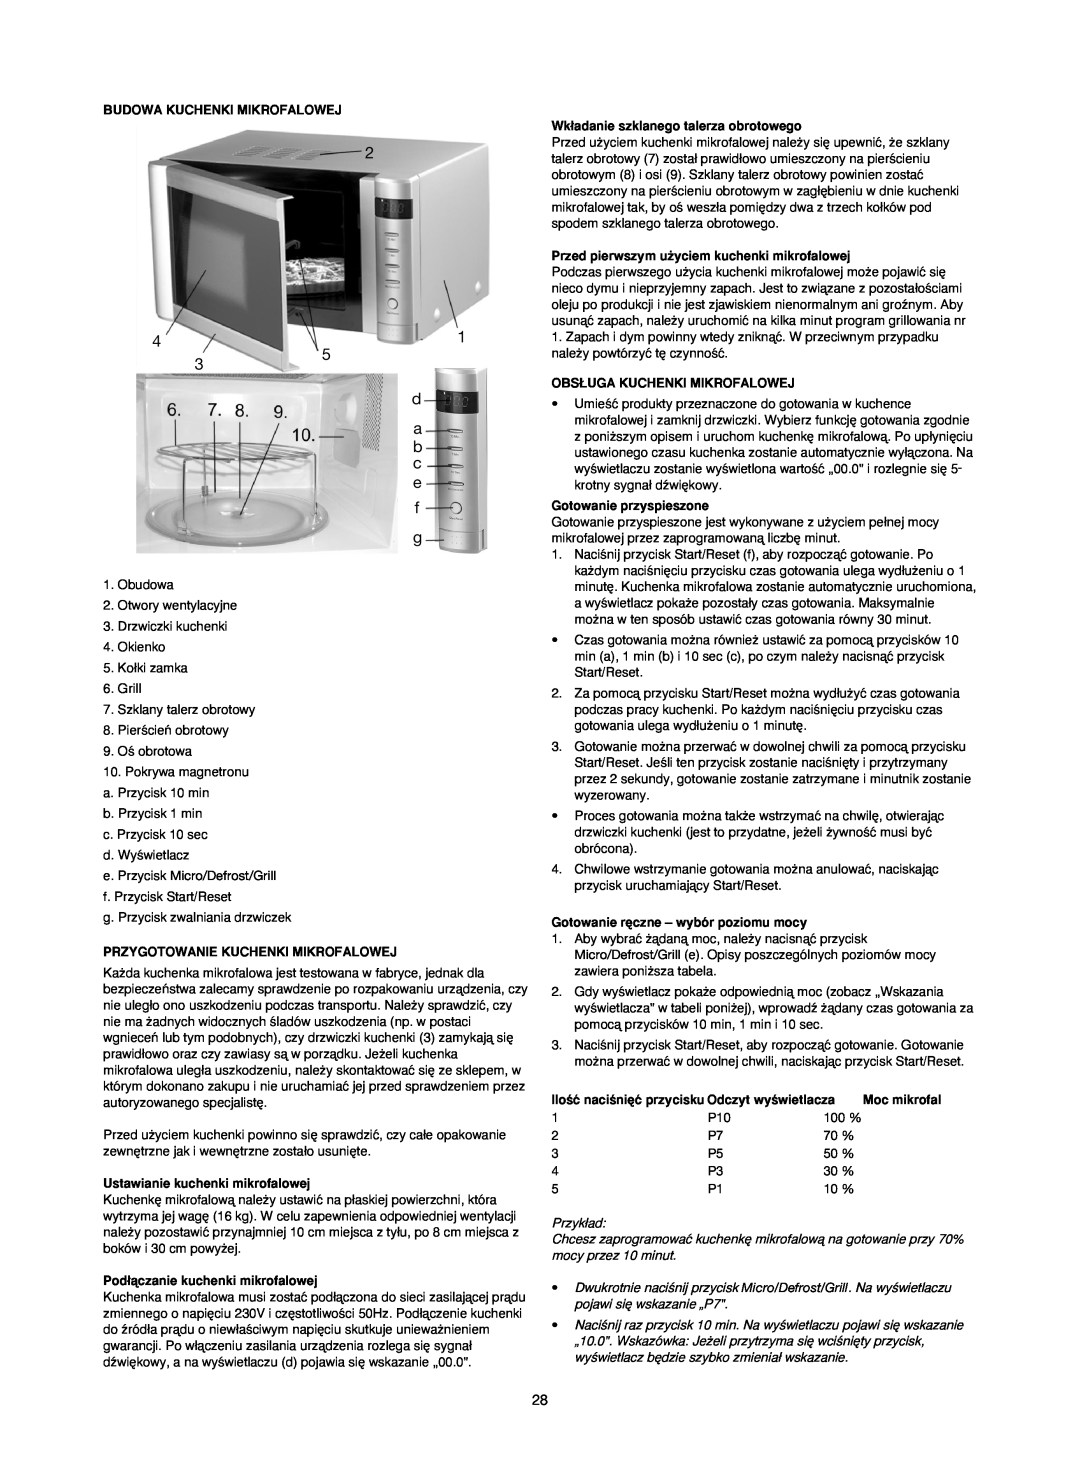 Melissa 253-006 manual Budowa Kuchenki Mikrofalowej, Wk∏adanie szklanego talerza obrotowego, Obs¸Uga Kuchenki Mikrofalowej 